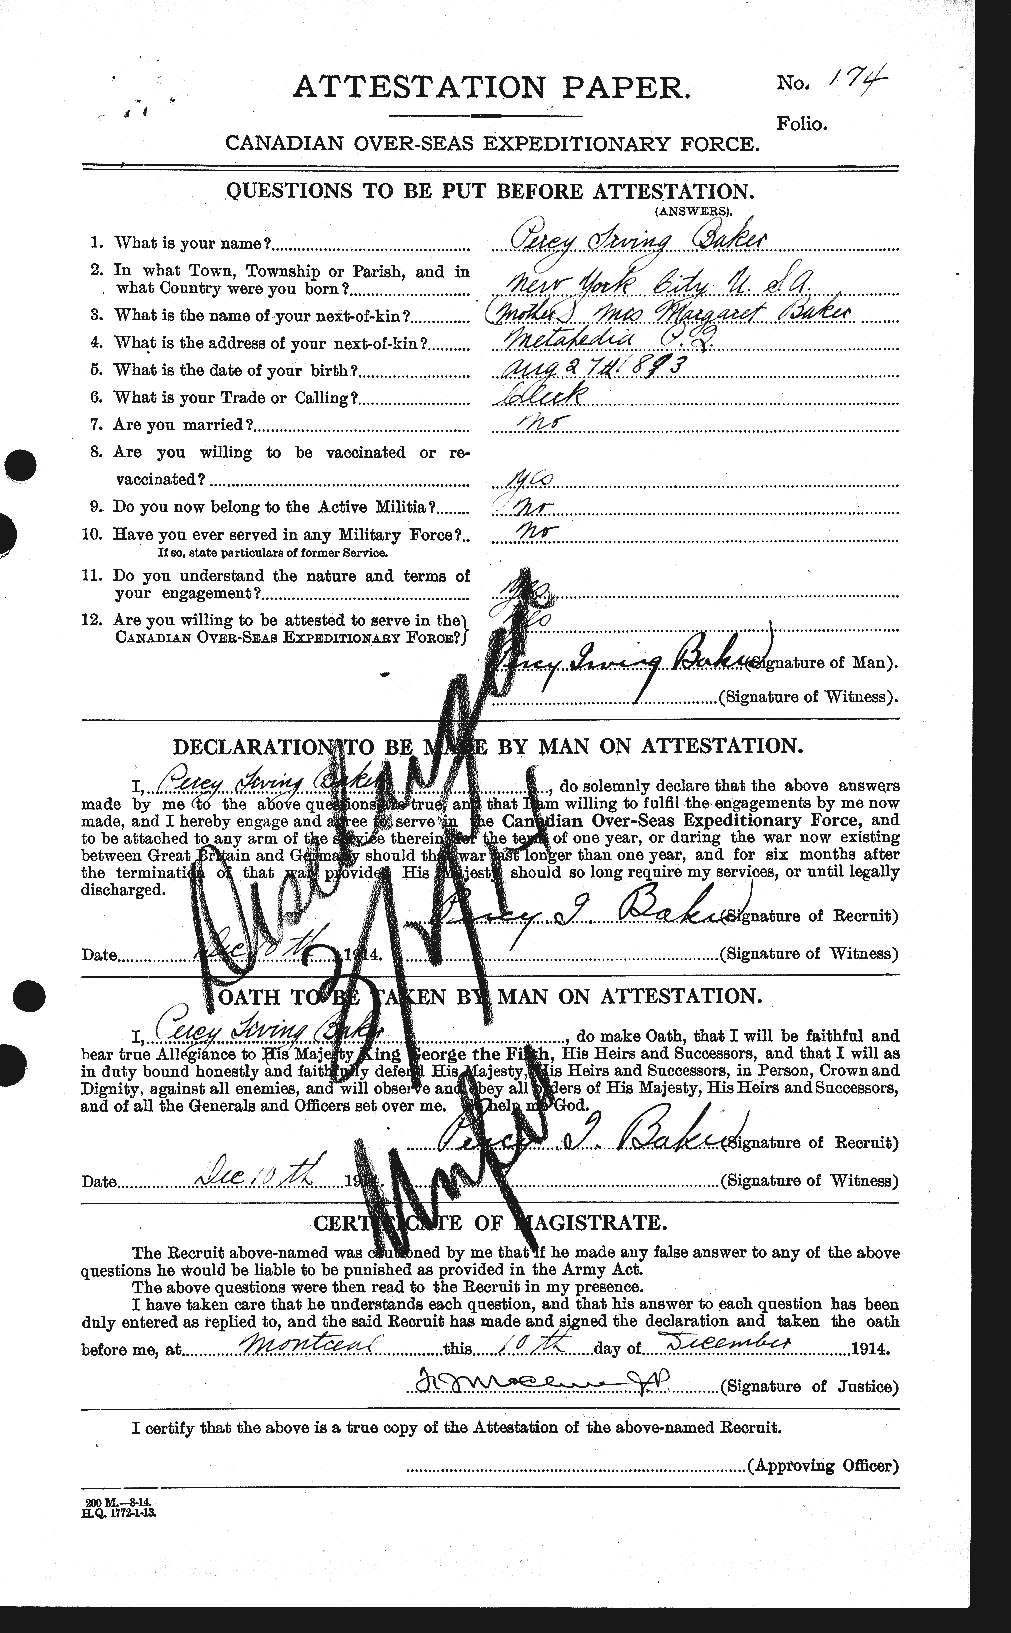 Dossiers du Personnel de la Première Guerre mondiale - CEC 222261a